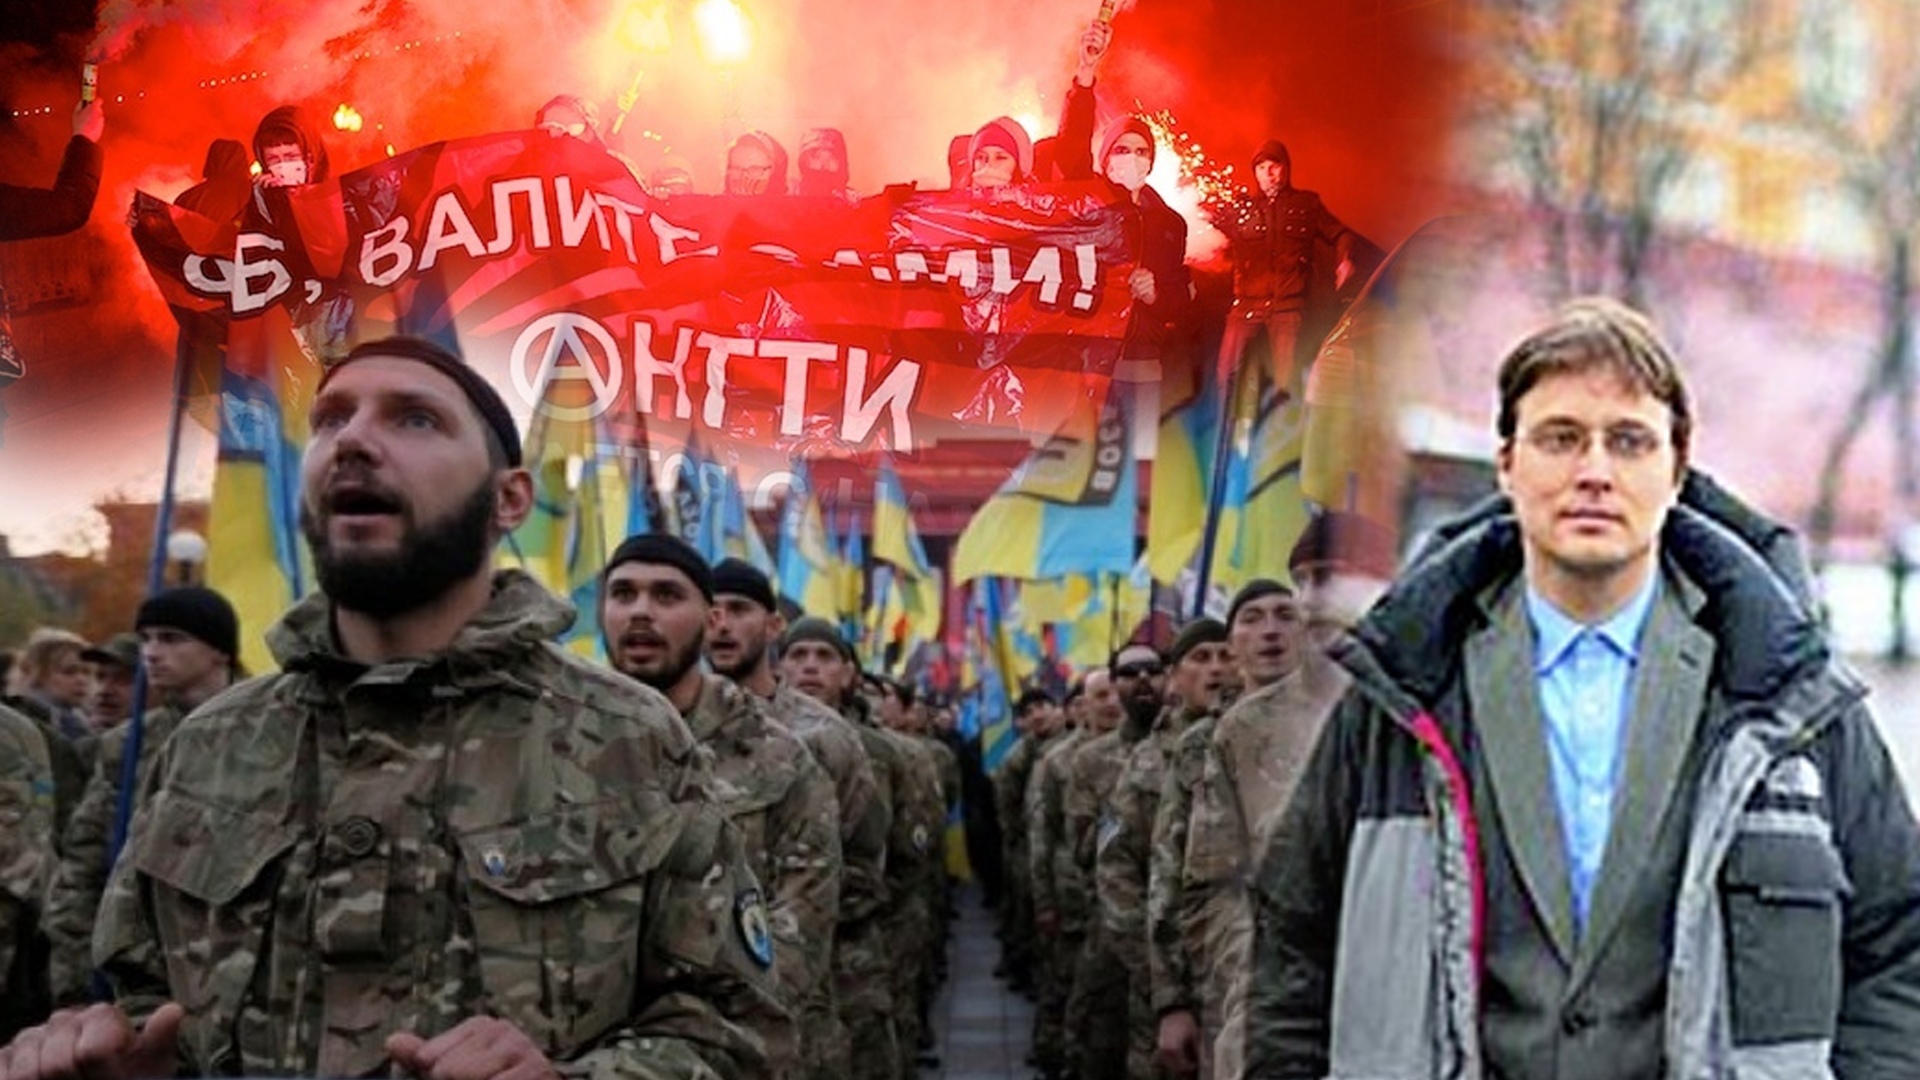 La esvástica del "Azov" ya no asusta a la Patria "anarquista" rusa en el Neva